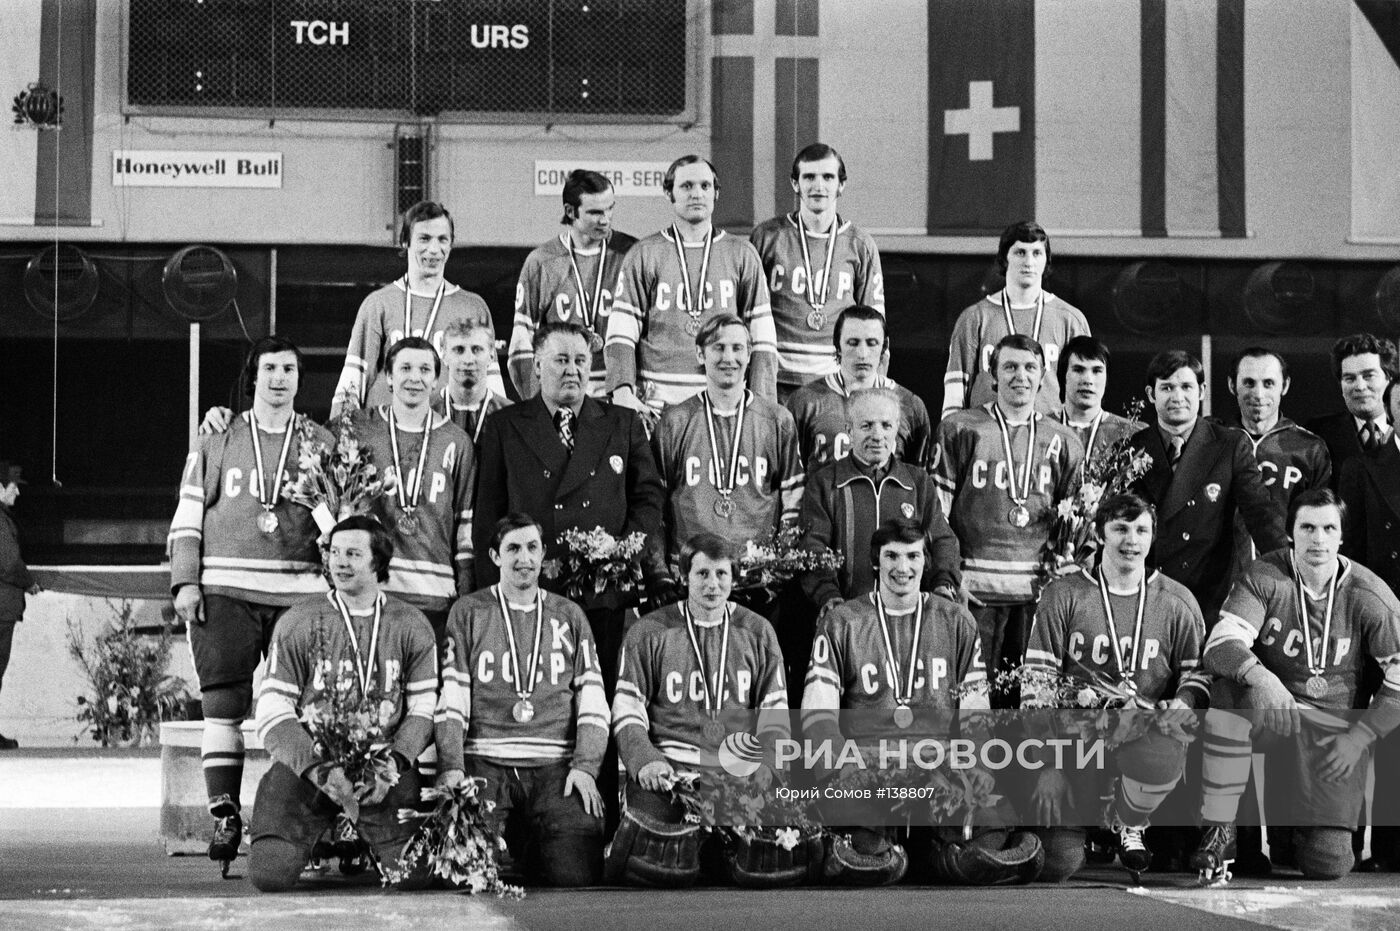 Сборная команда СССР по хоккею